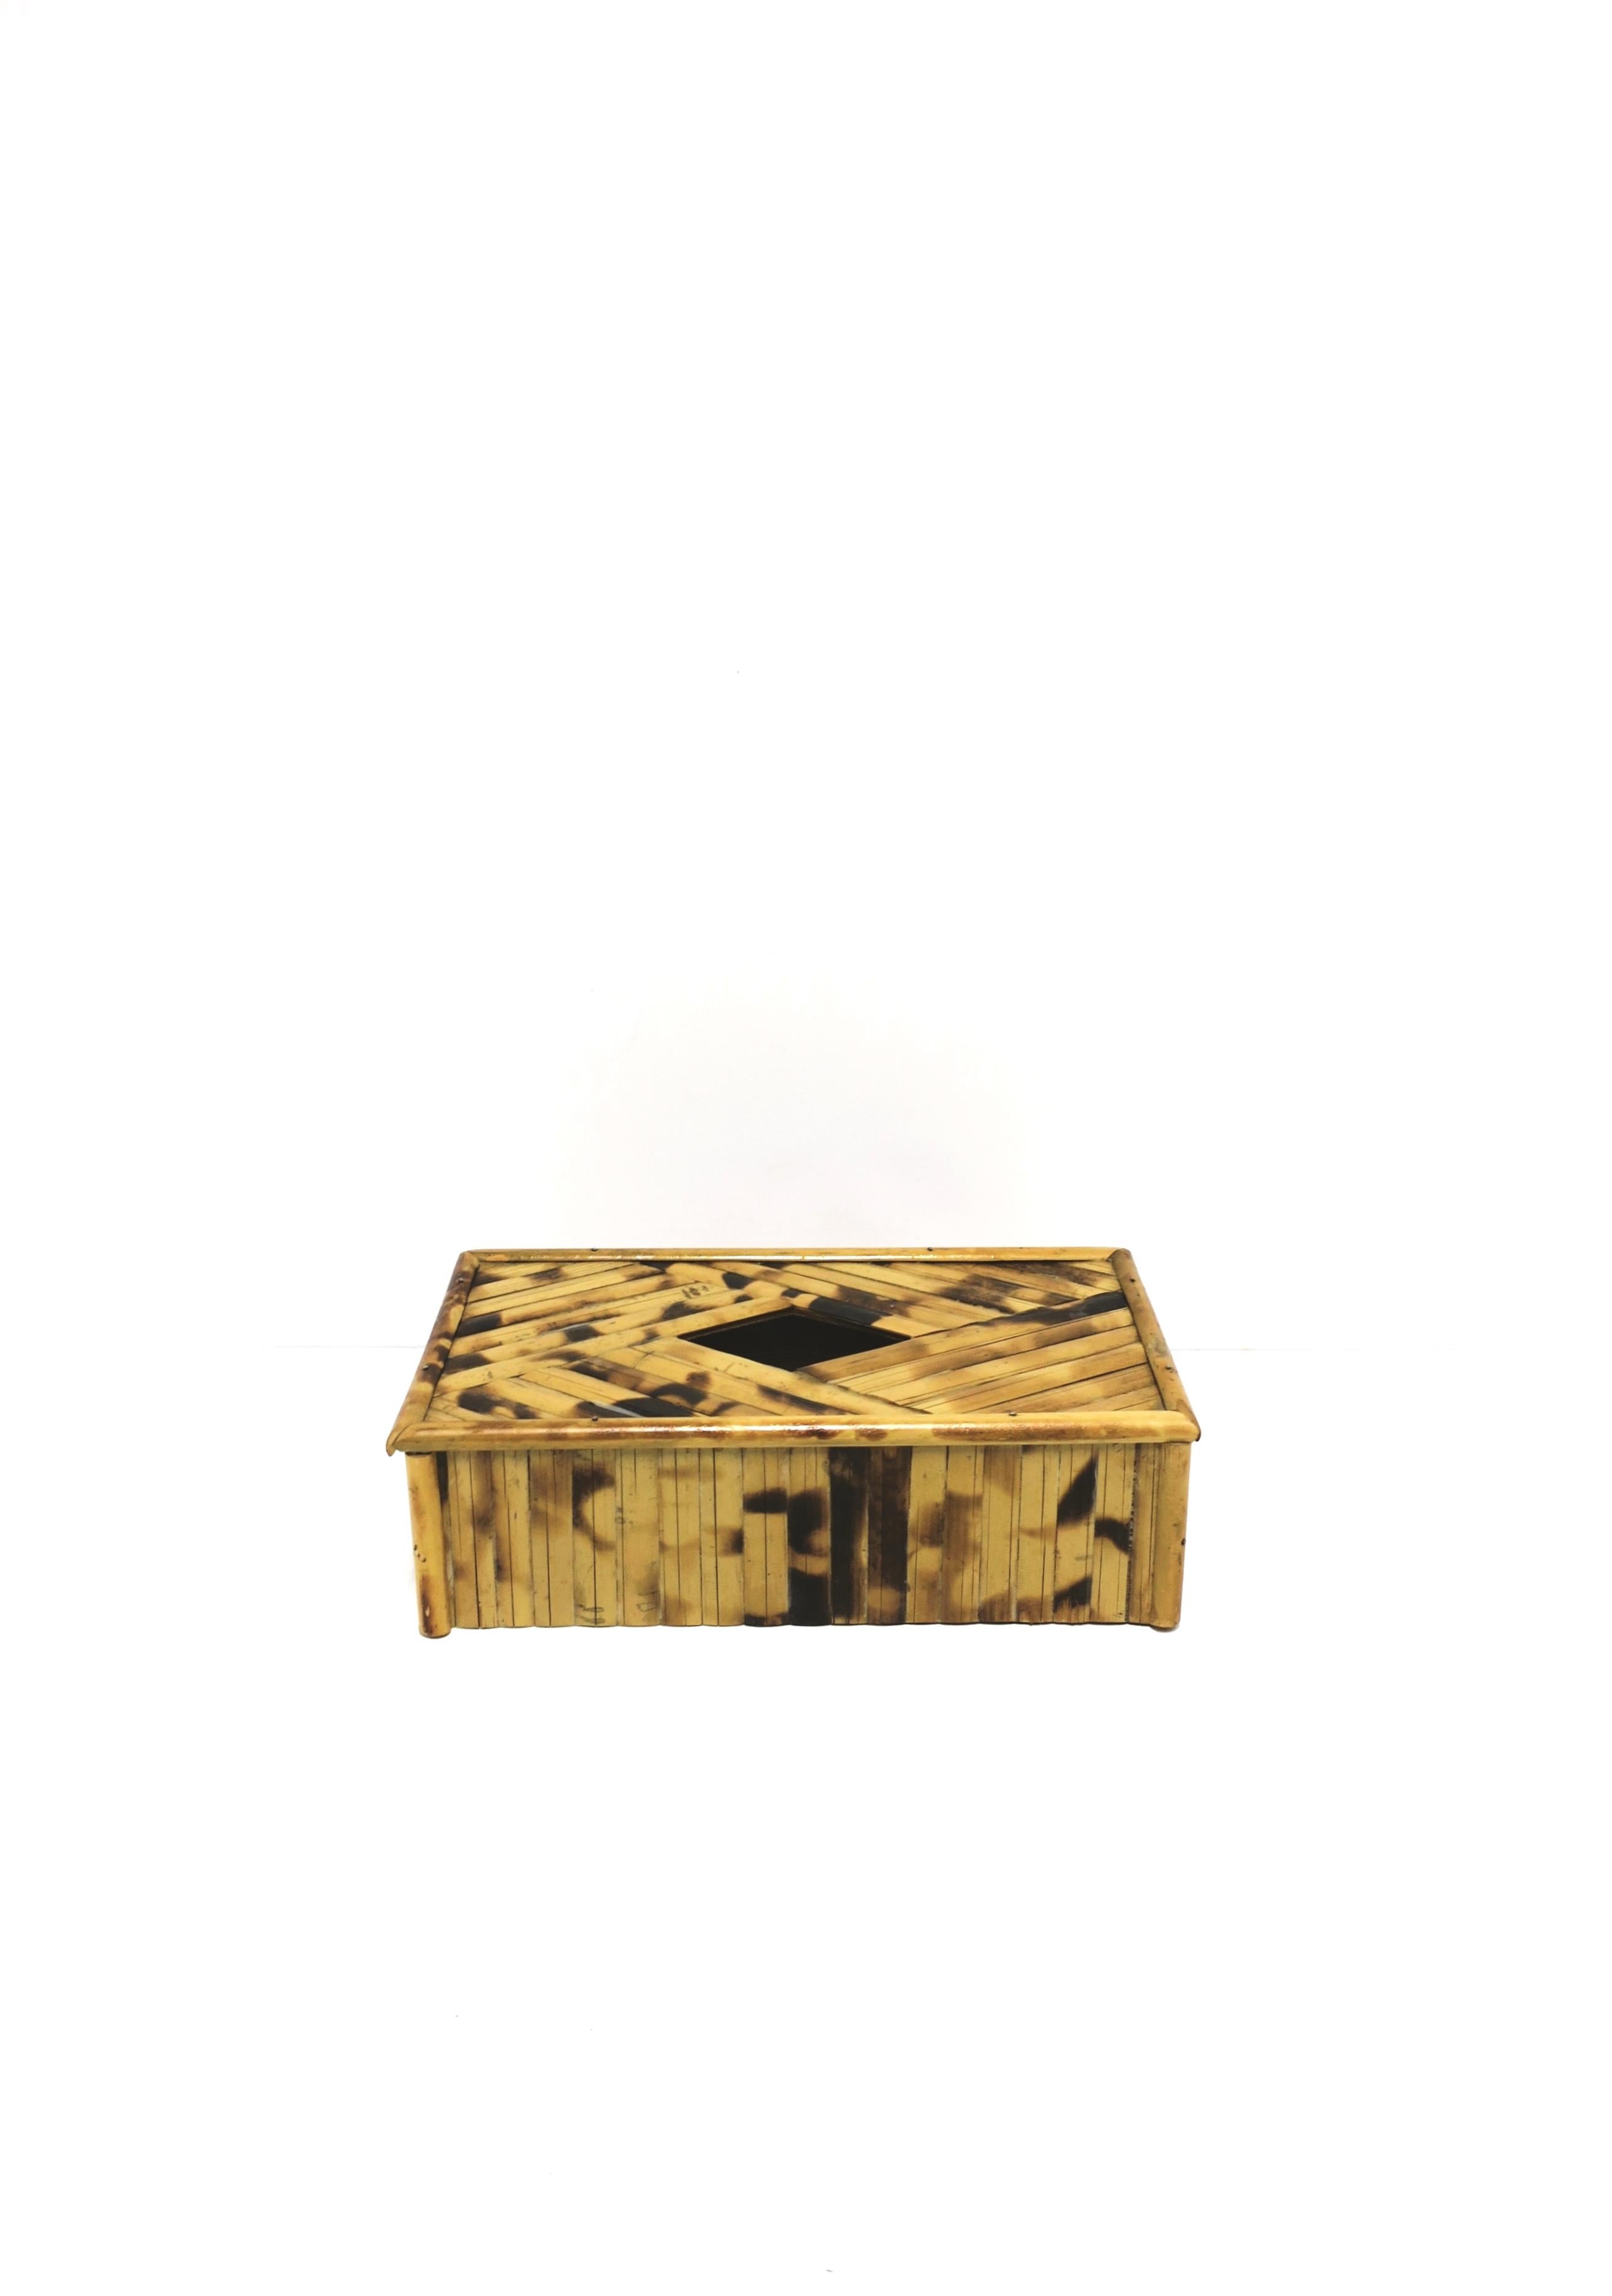 Hülle für eine Taschentuchbox aus Bambusgeflecht, ca. 1970er Jahre. Box ist alle Bambus mit einer schönen Marke Öffnung auf der Oberseite. Abmessungen: 5,5